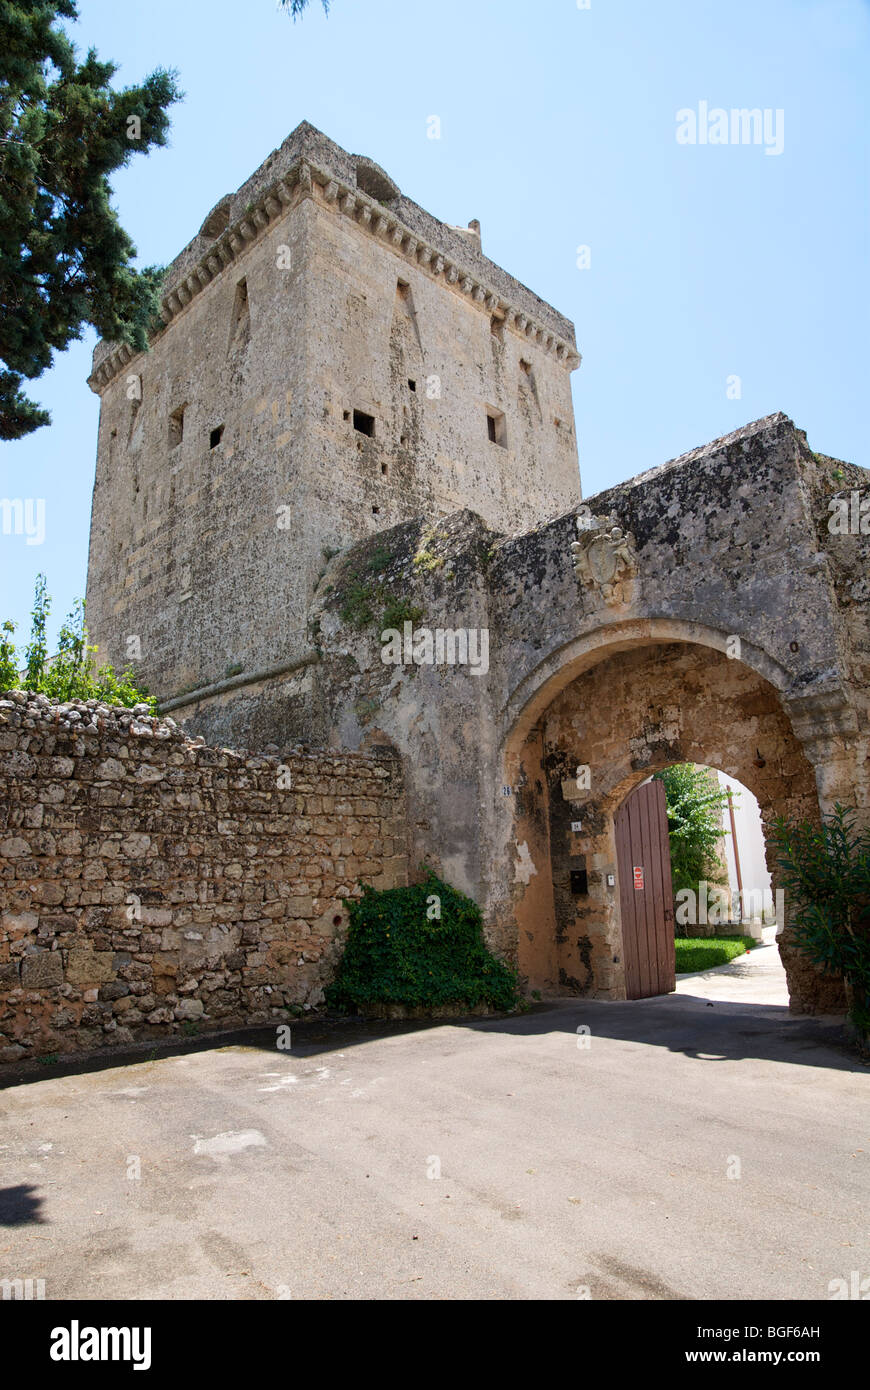 Italy: Apulia, Morciano di Leuca (Lecce) in the castle Stock Photo